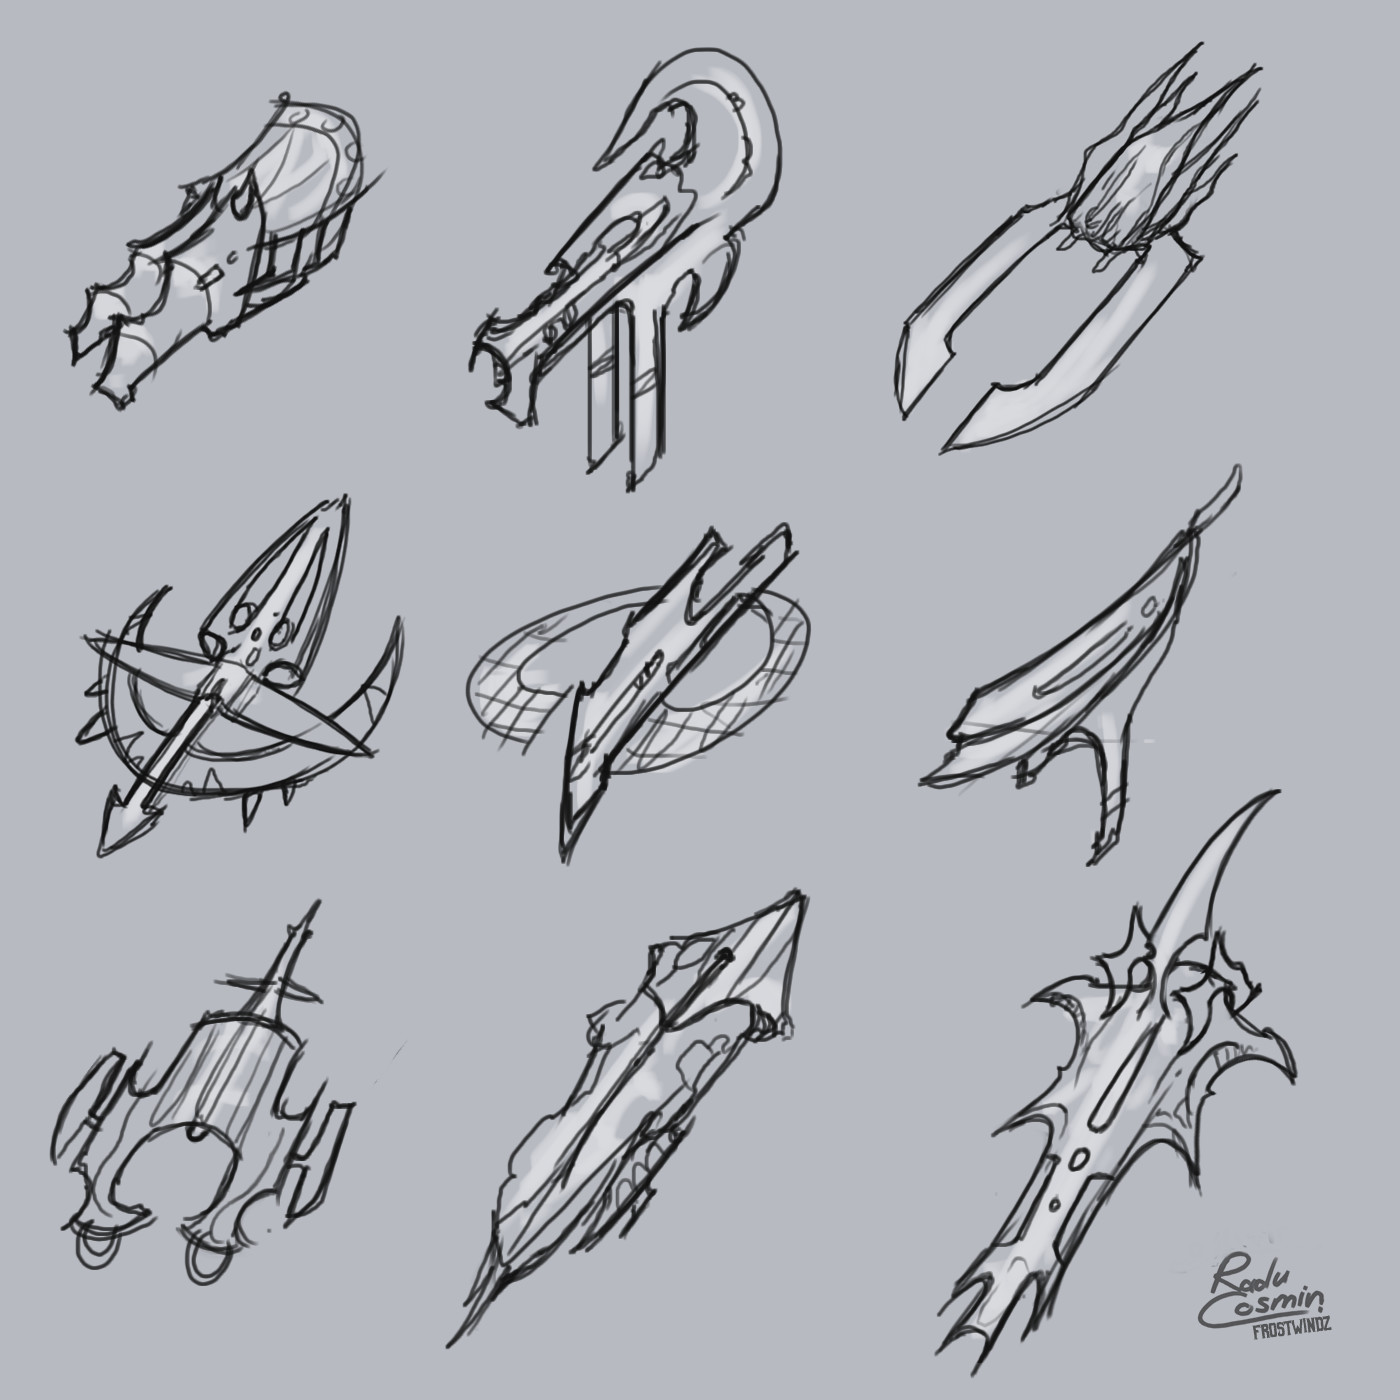 sci fi spaceship drawing